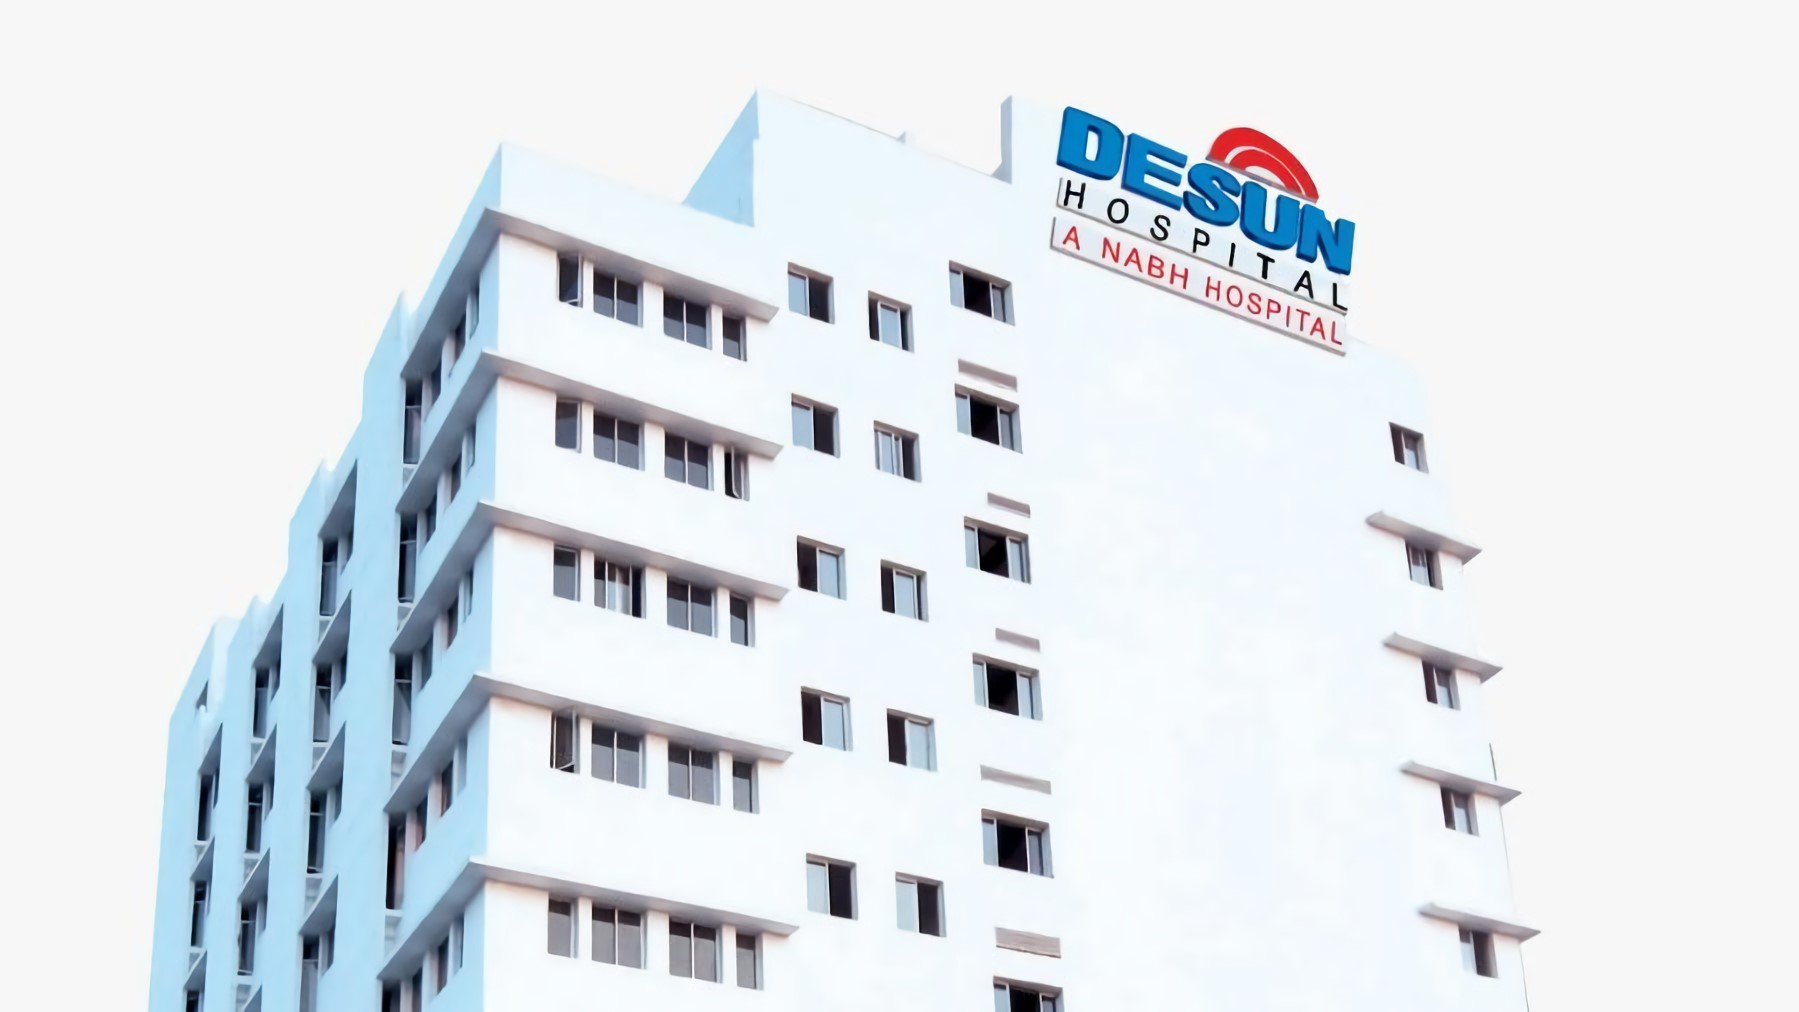 Desun Hospital review